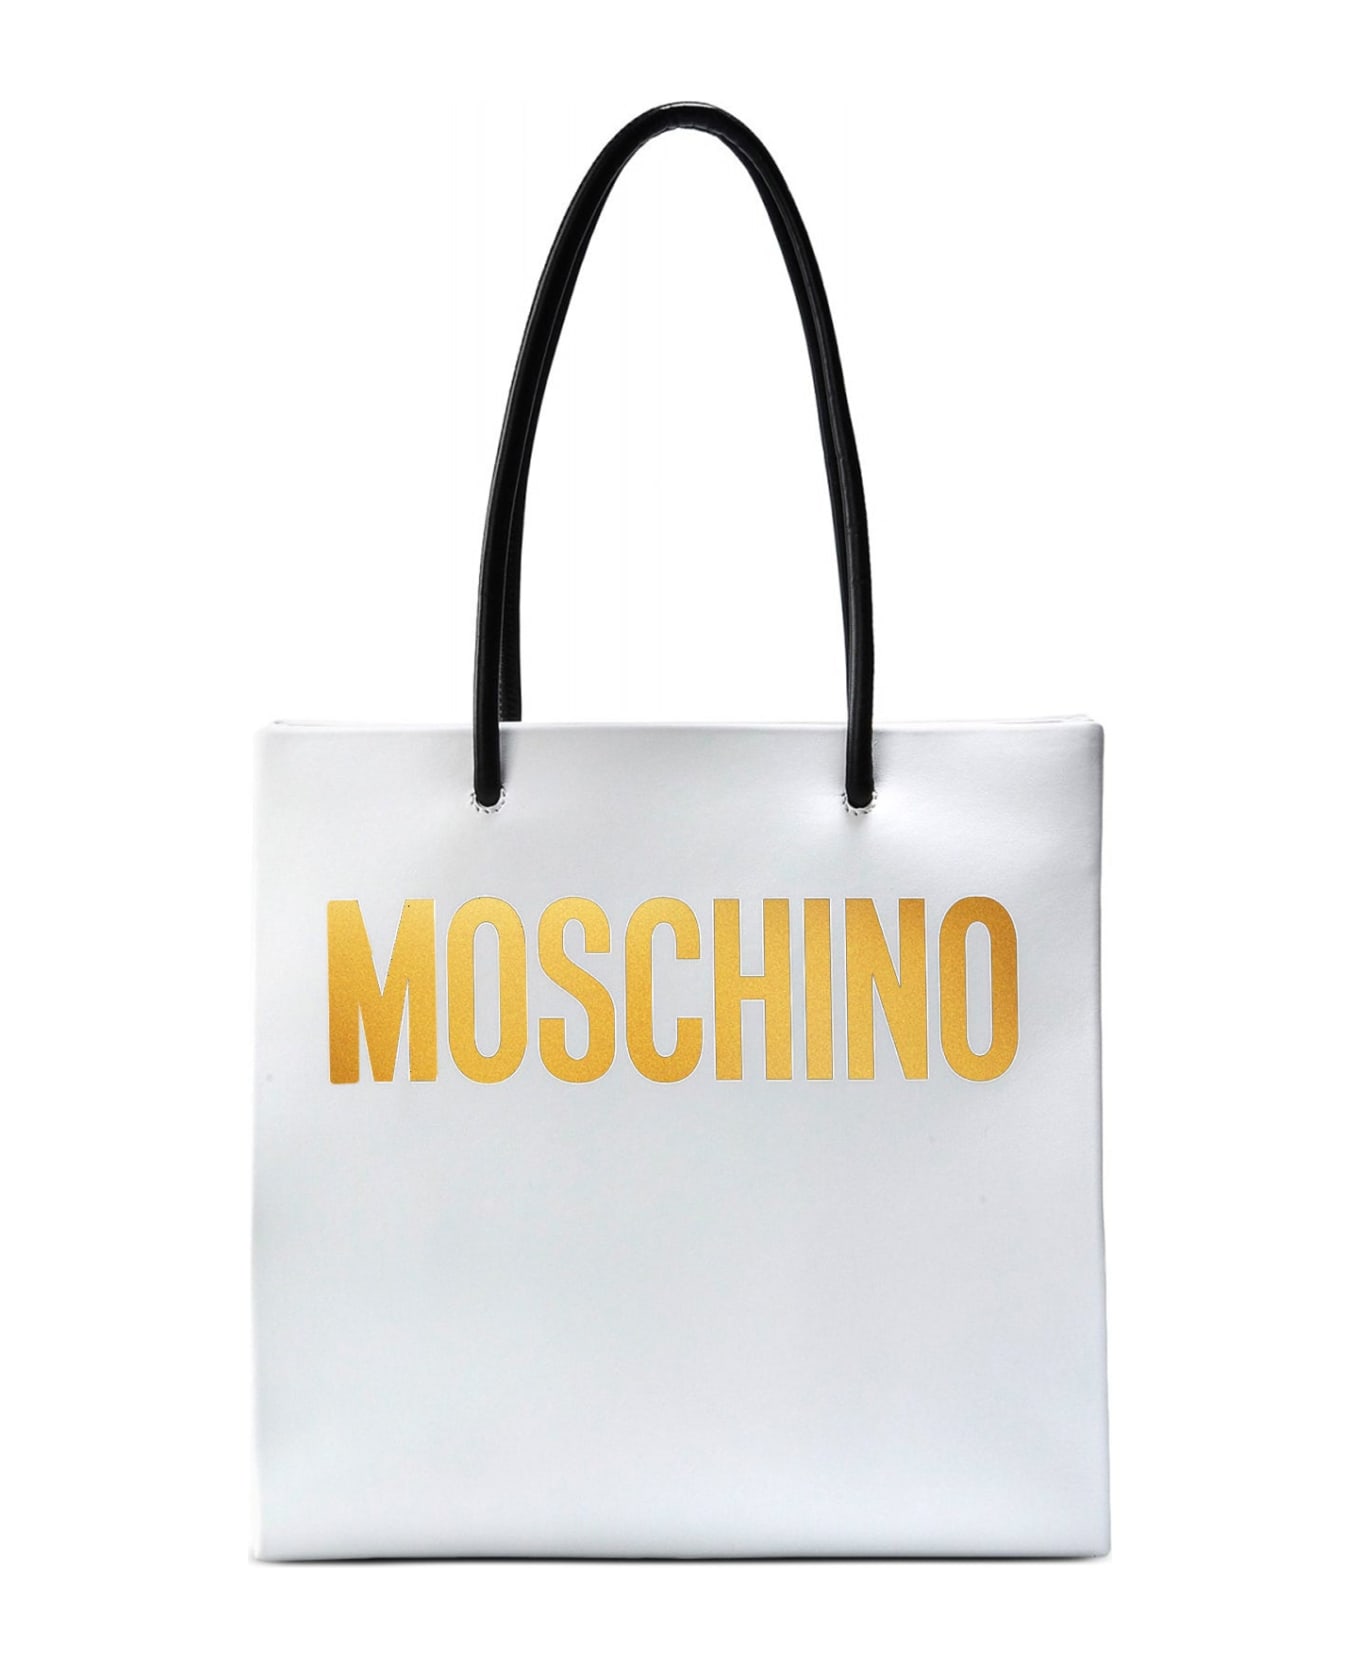 Moschino Logo Tote - White